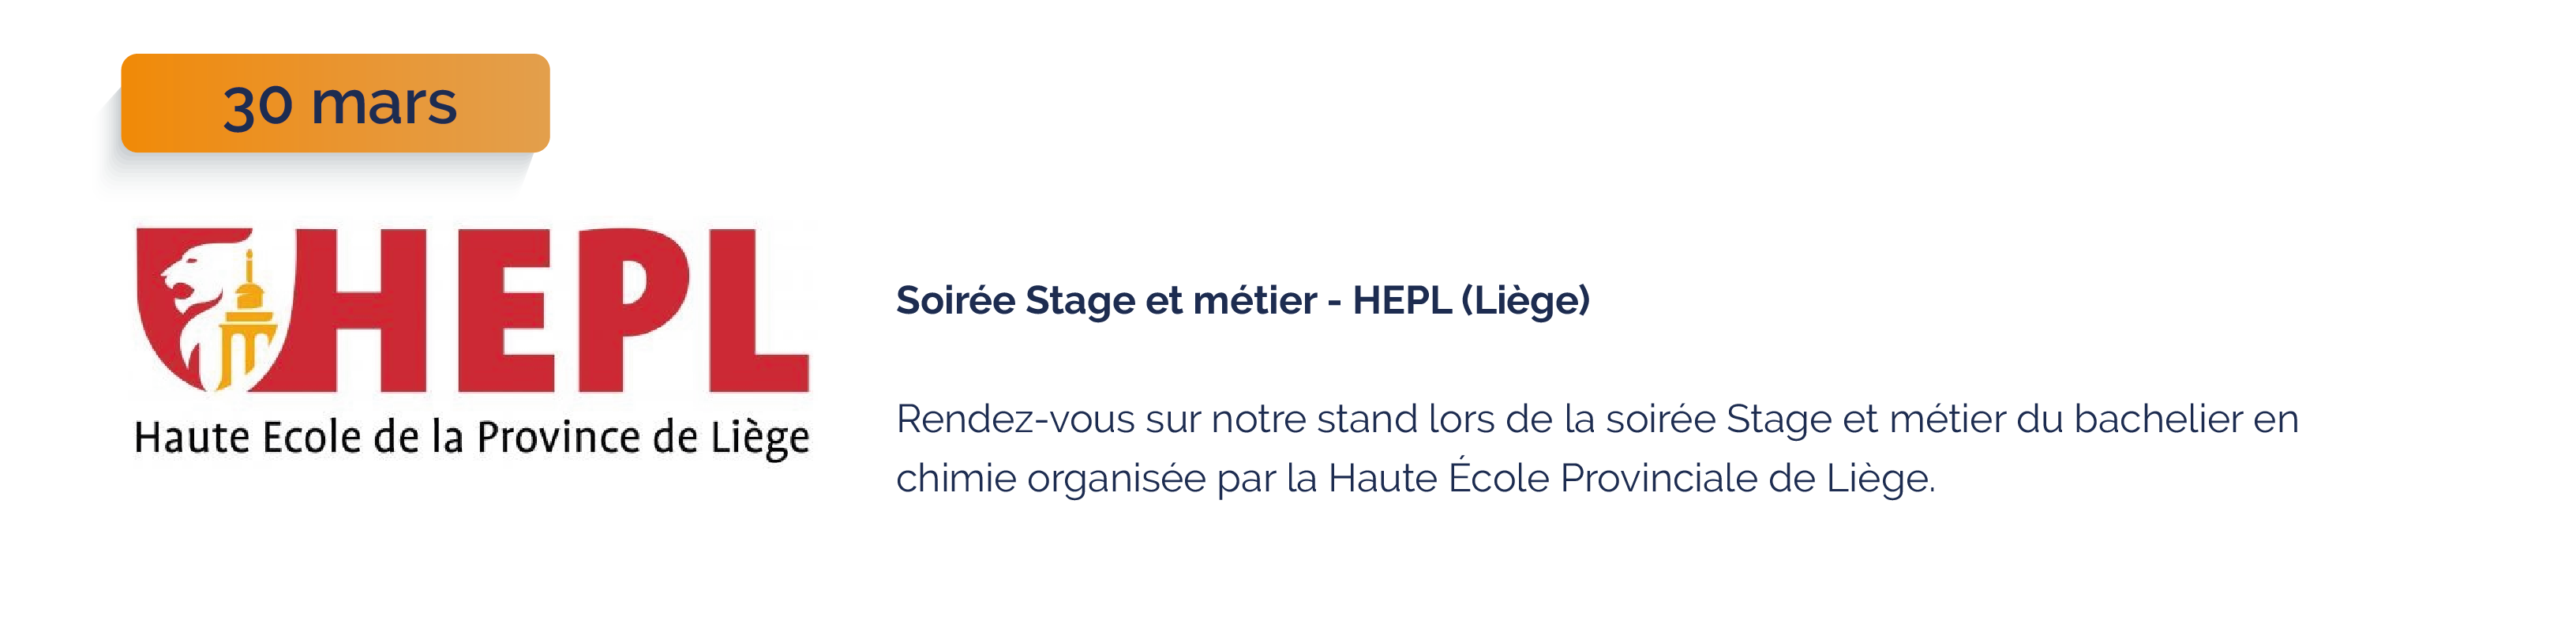 Soirée Stage et métier HEPL Liège 